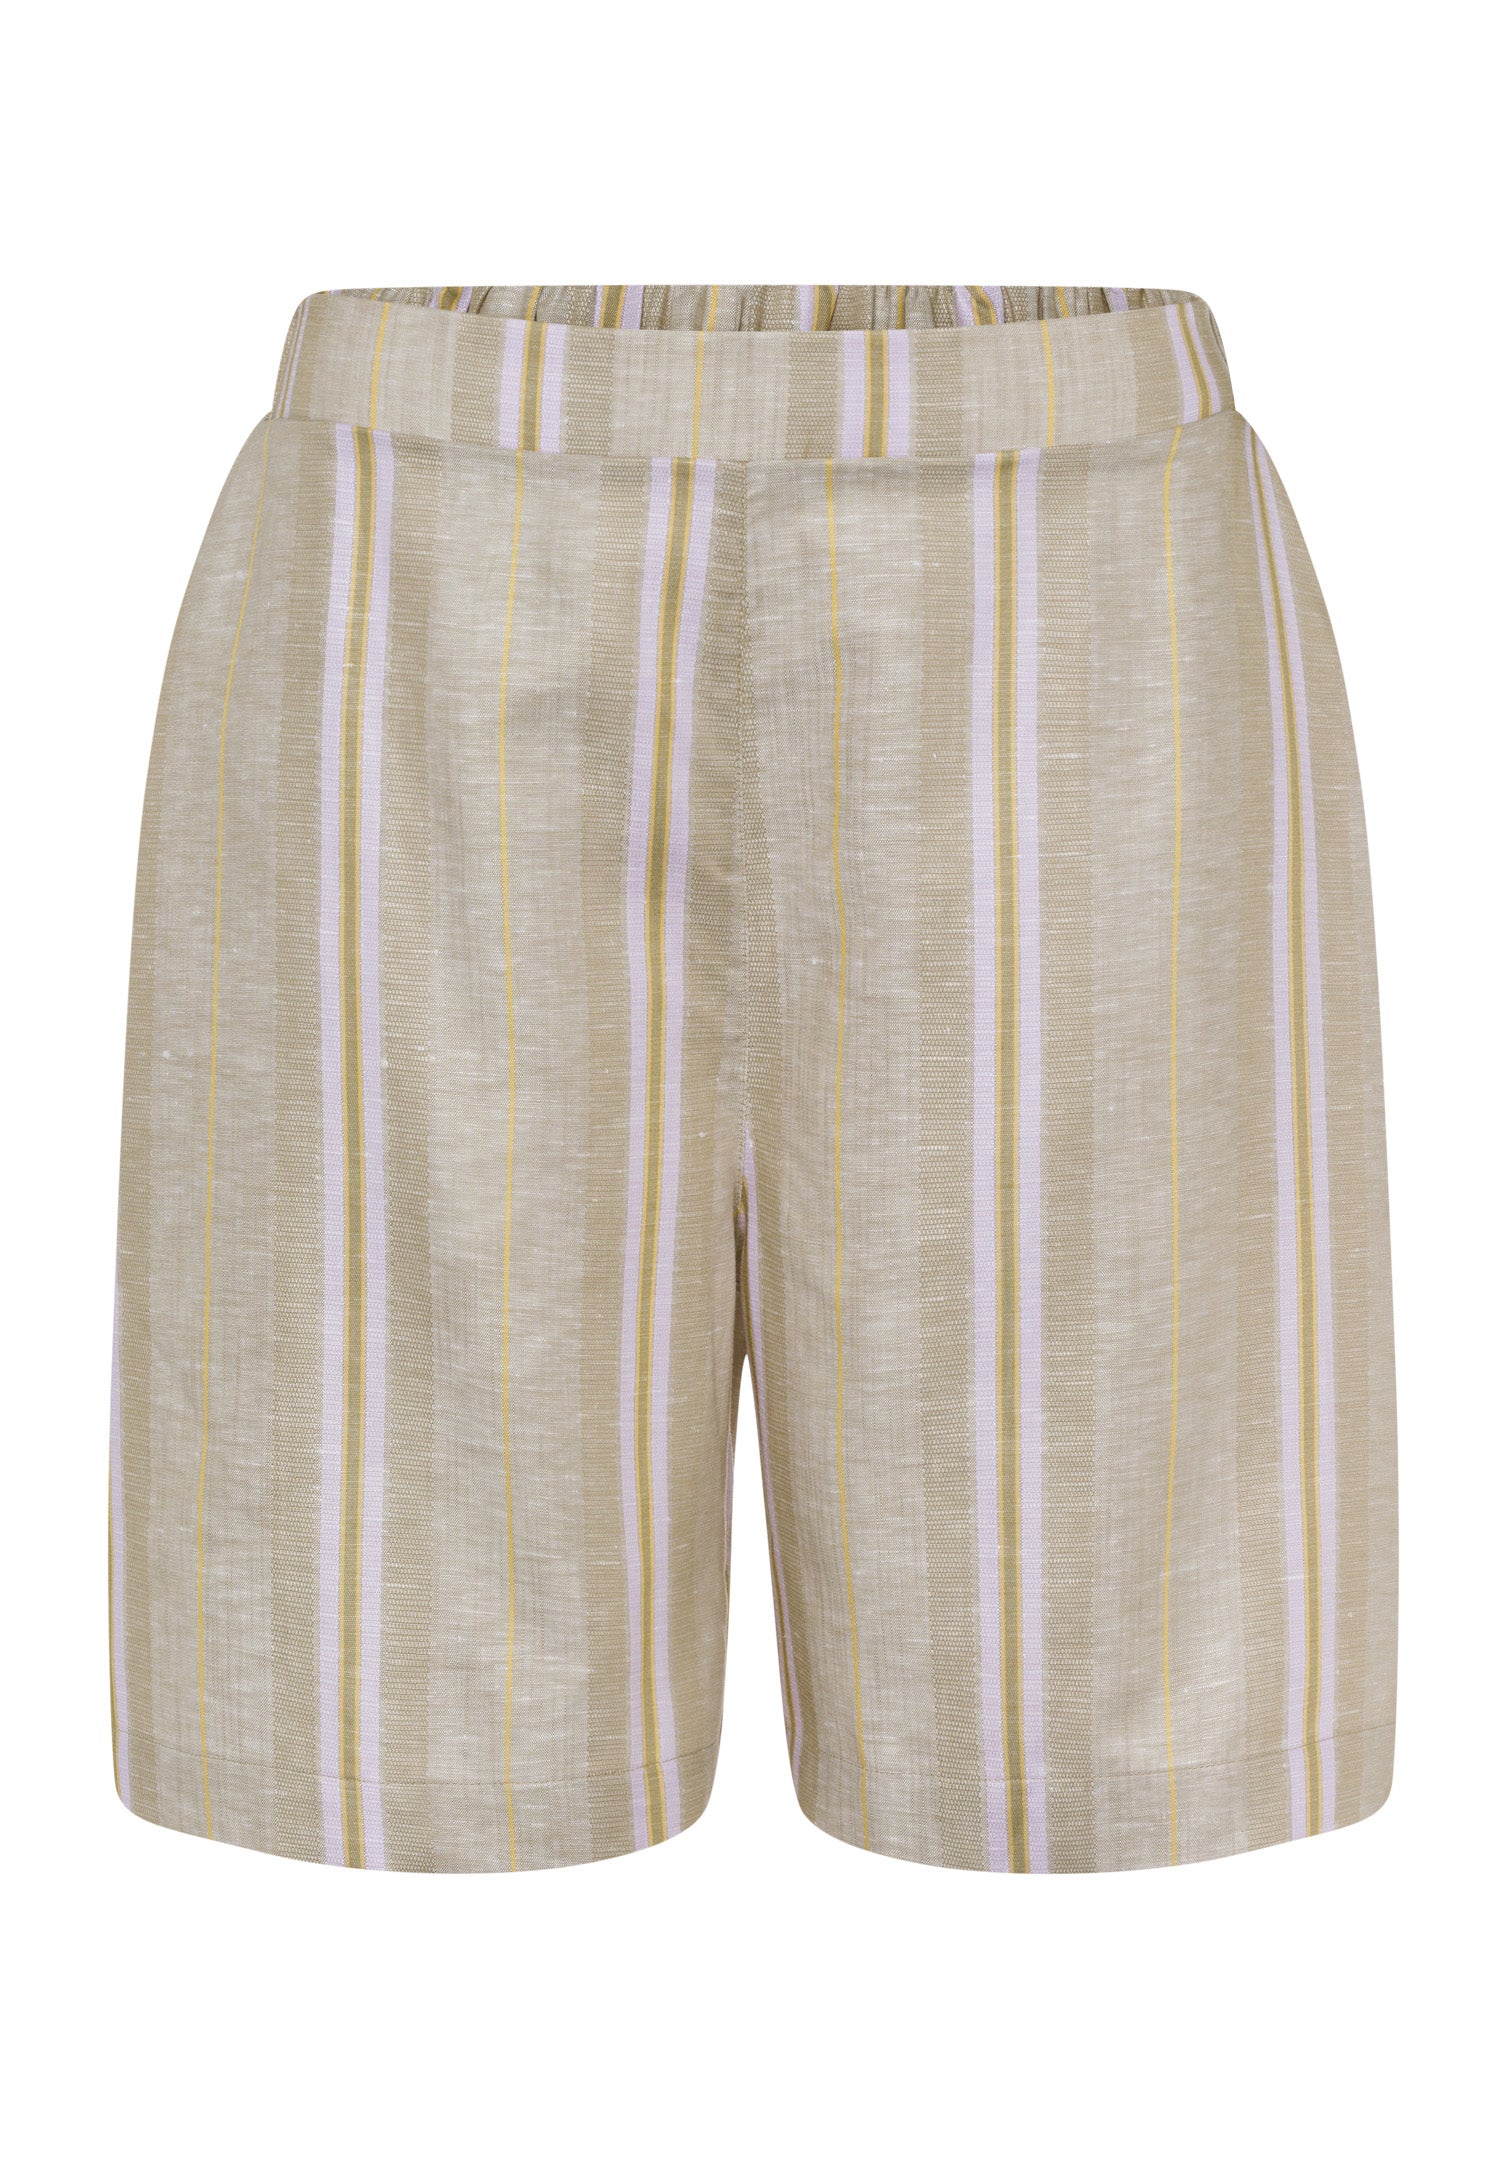 78669 Urban Casuals Shorts - 2960 Affogato Stripe